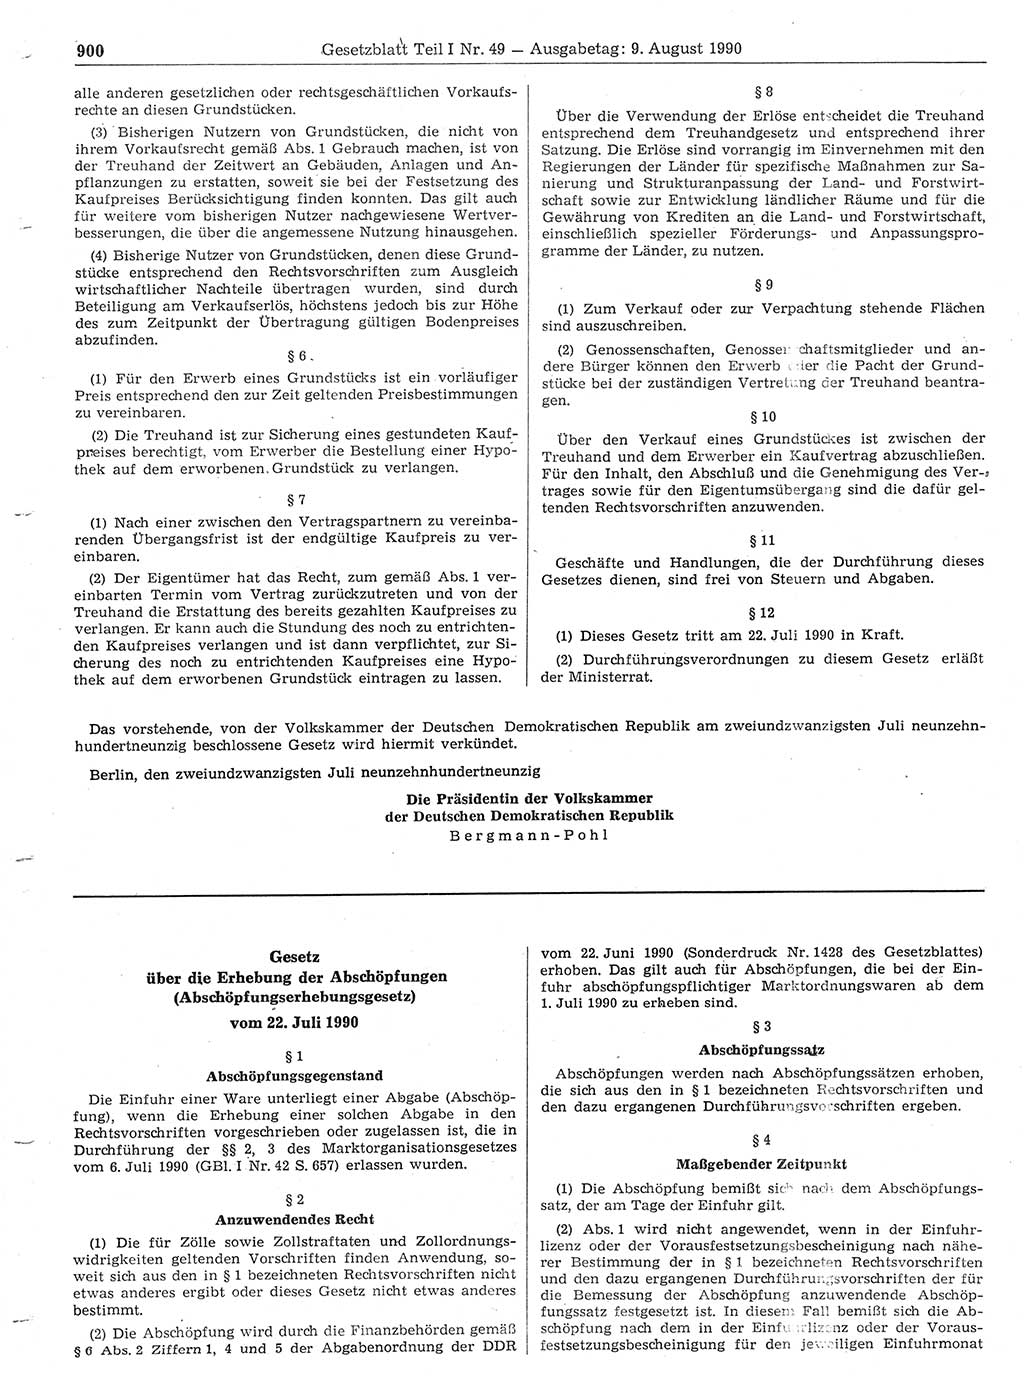 Gesetzblatt (GBl.) der Deutschen Demokratischen Republik (DDR) Teil Ⅰ 1990, Seite 900 (GBl. DDR Ⅰ 1990, S. 900)